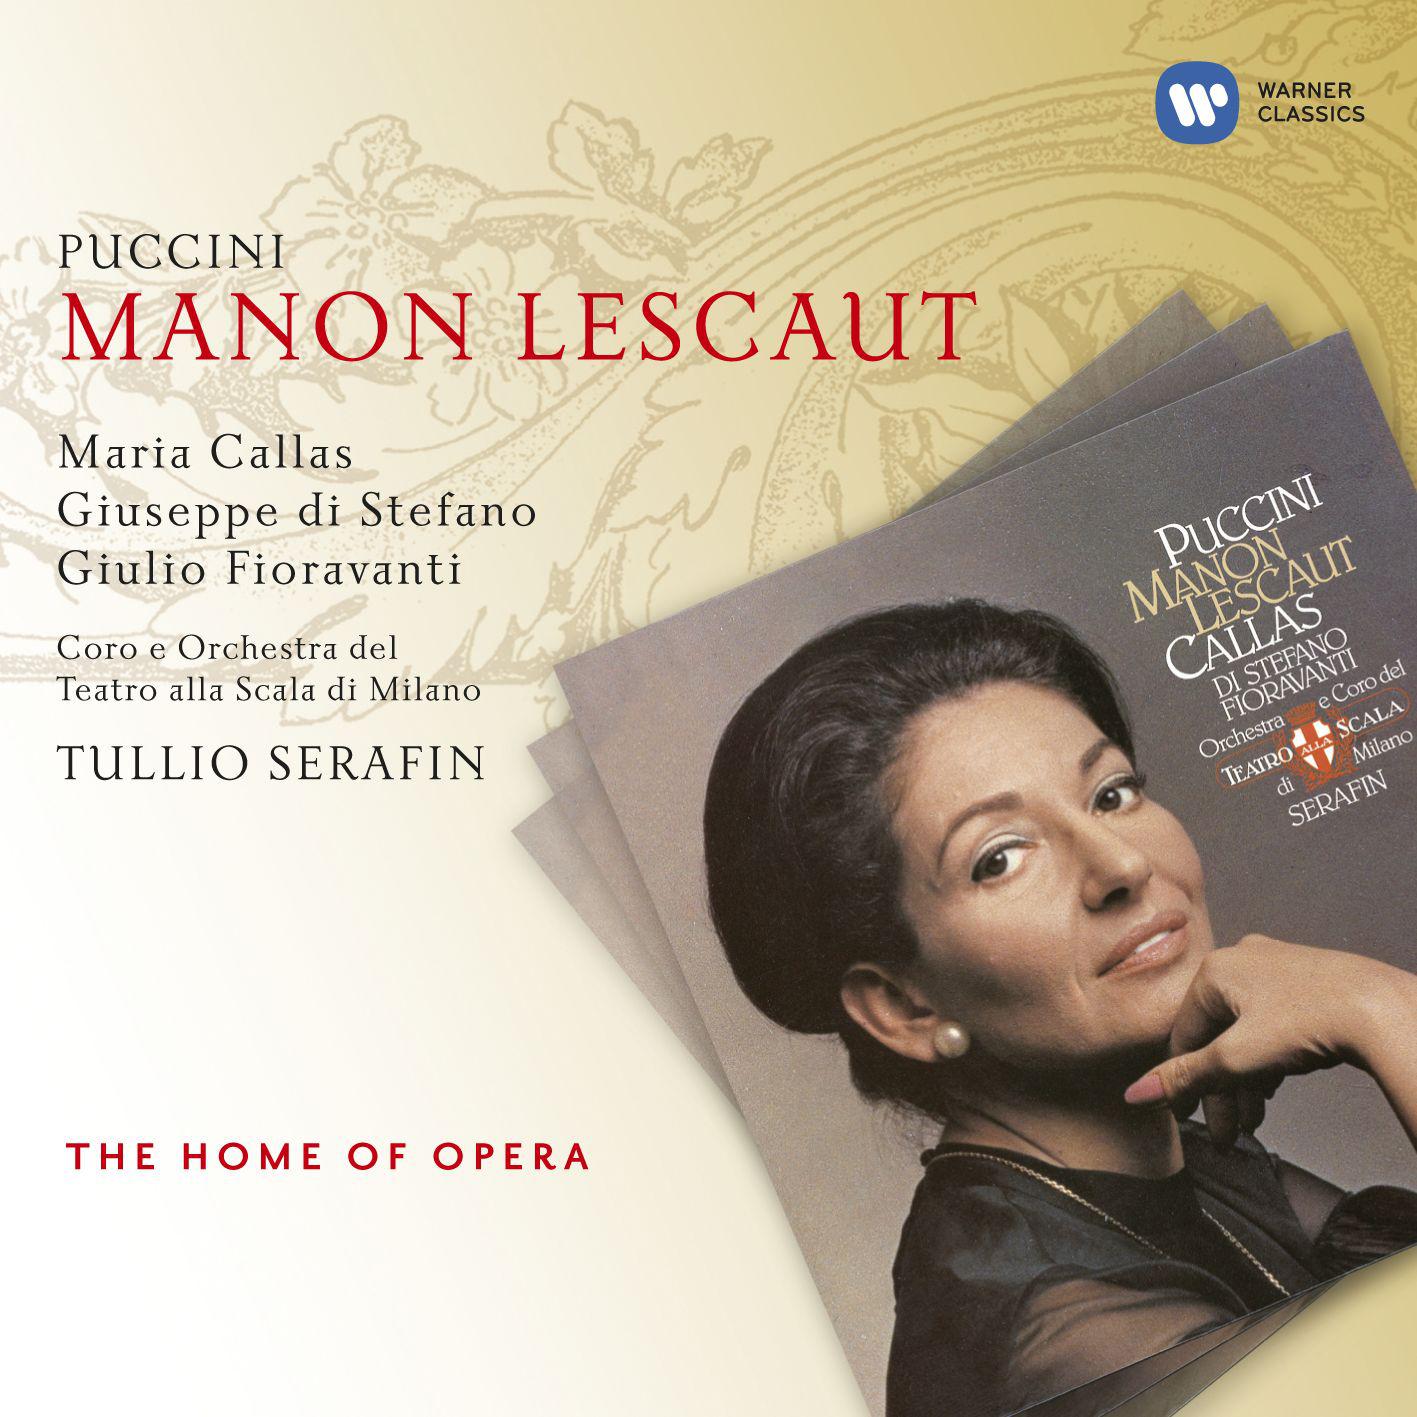 Giuseppe di Stefano/Maria Callas/Orchestra del Teatro alla Scala, Milano/Tullio Serafin - Manon Lescaut (1997 Remastered Version), Act IV:Sola, perduta, abbandonata (Manon/Des Grieux)